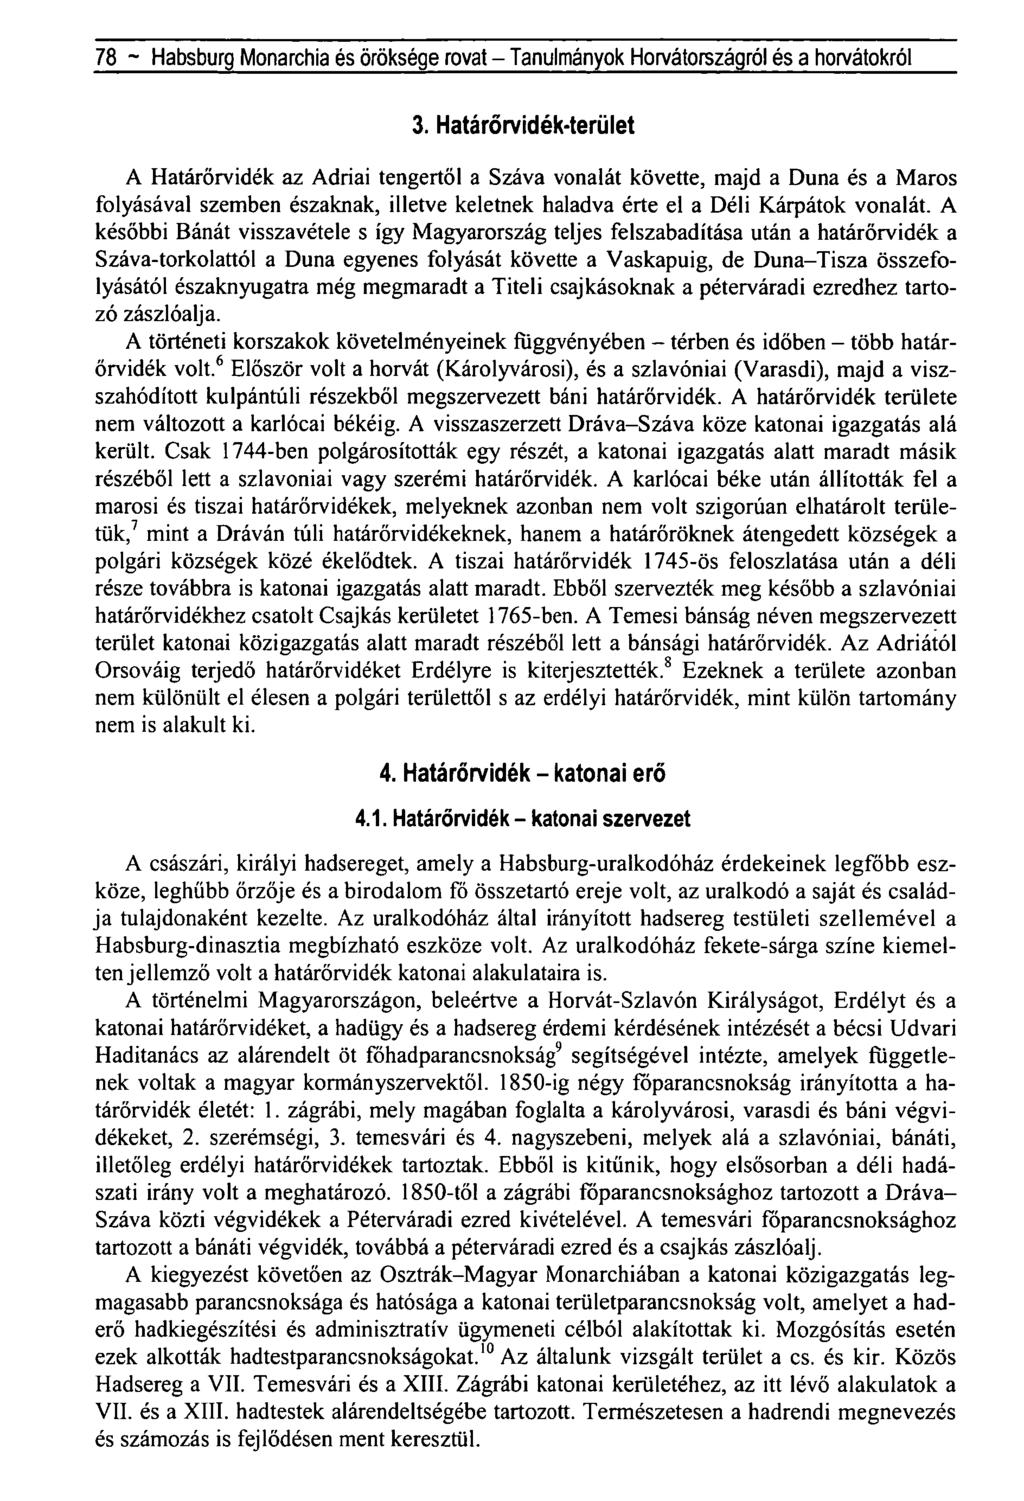 78 - Habsburg Monarchia és öröksége rovat - Tanulmányok Horvátországról és a horvátokról 3.